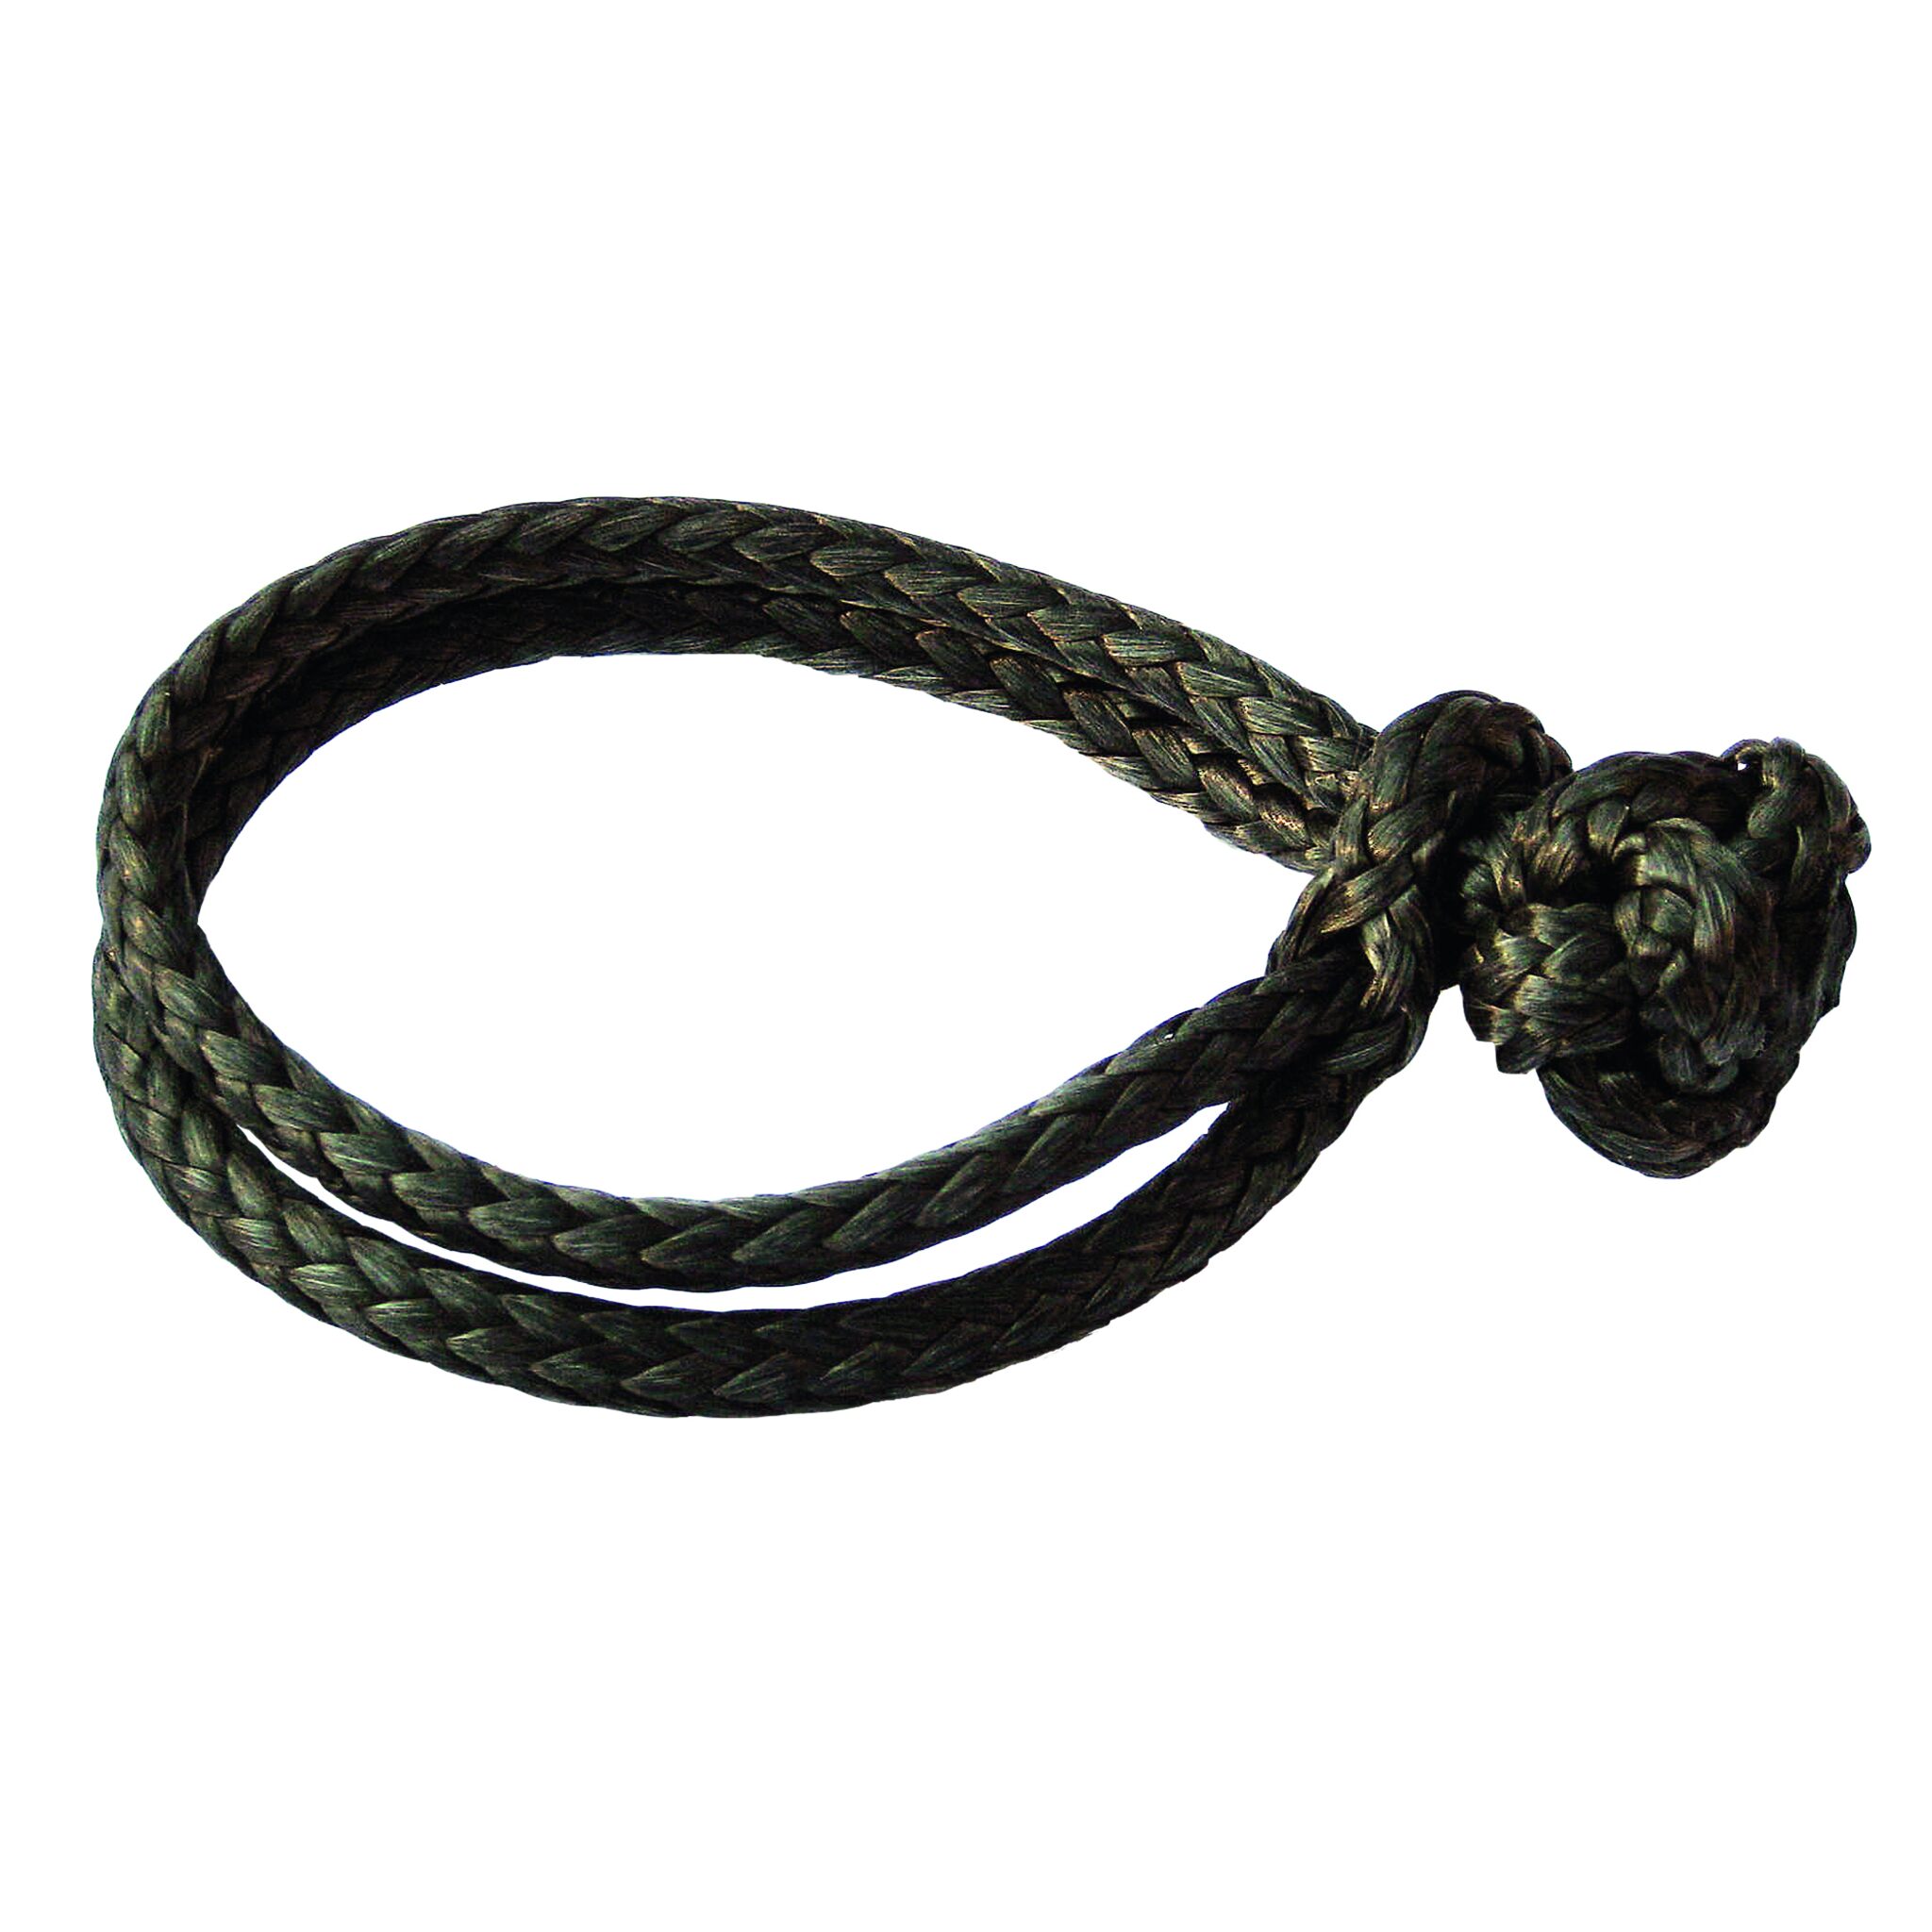 LOOP rope shackle